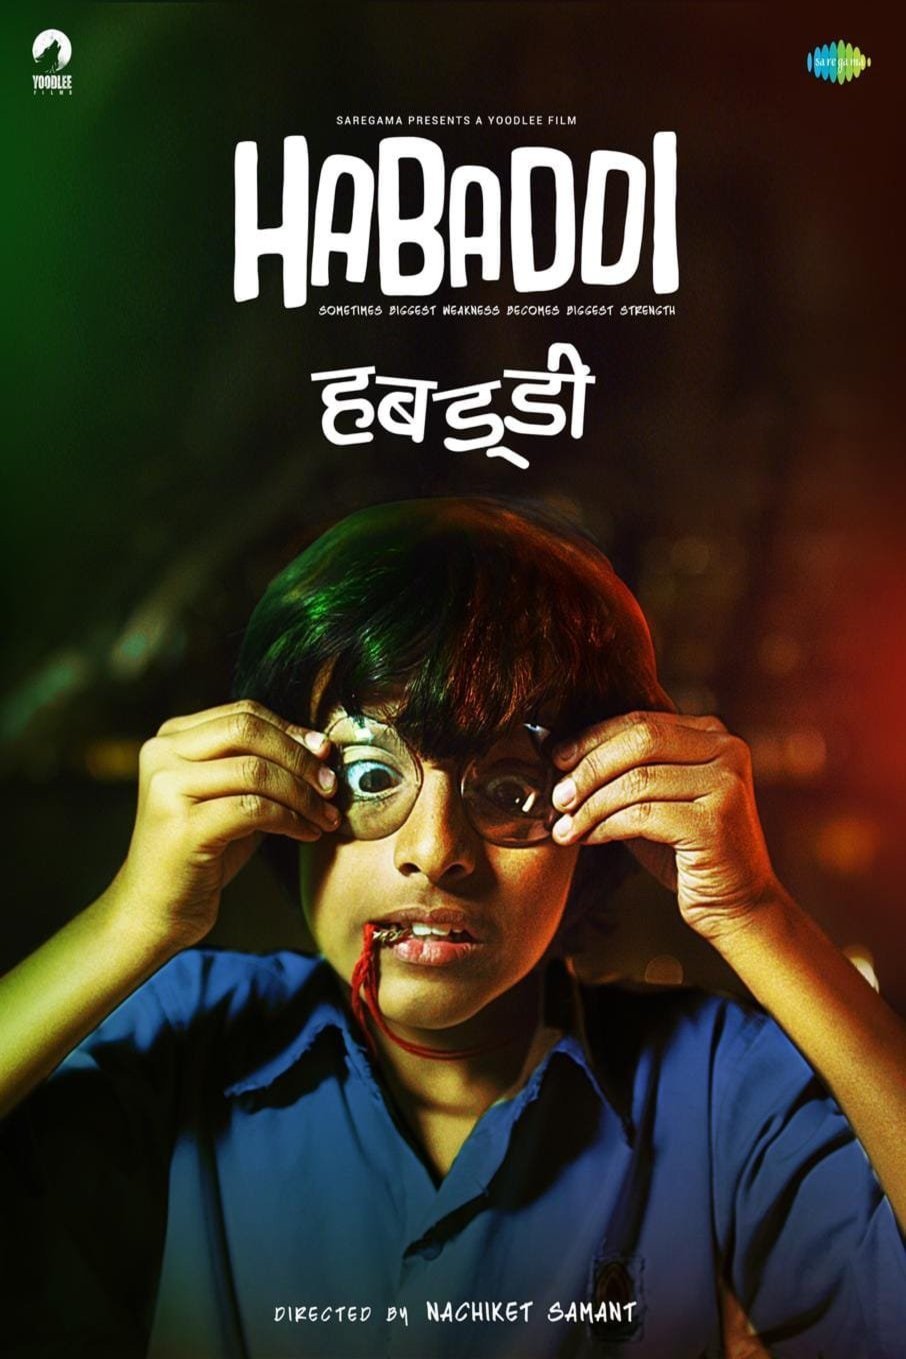 Marathi poster of the movie Habaddi